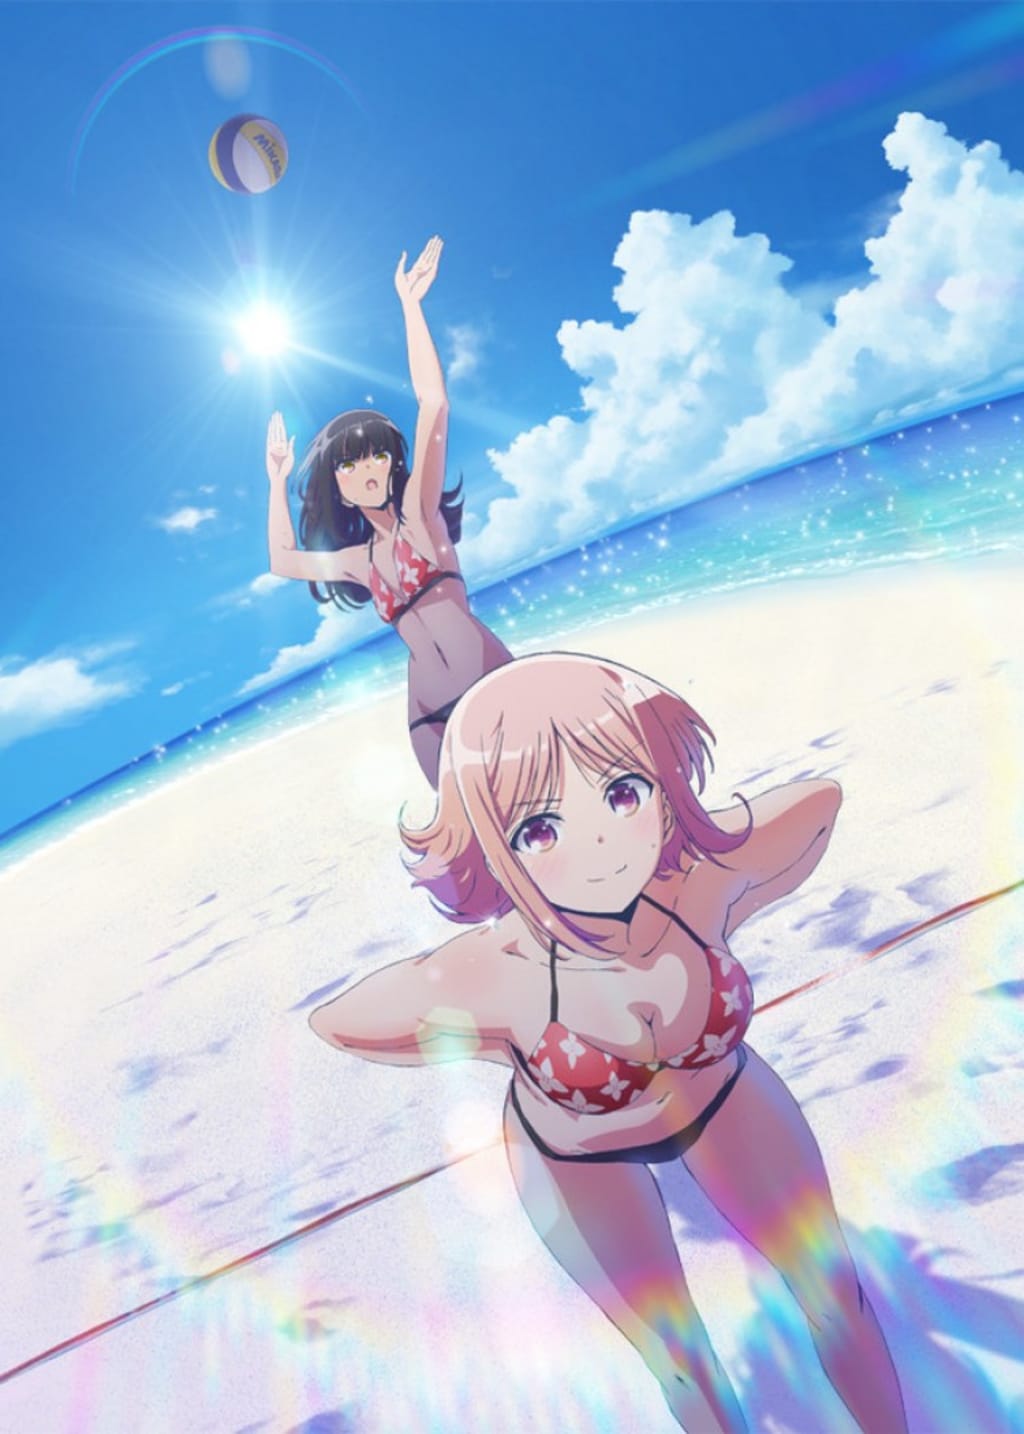 Summer 2022 anime calendar : r/anime